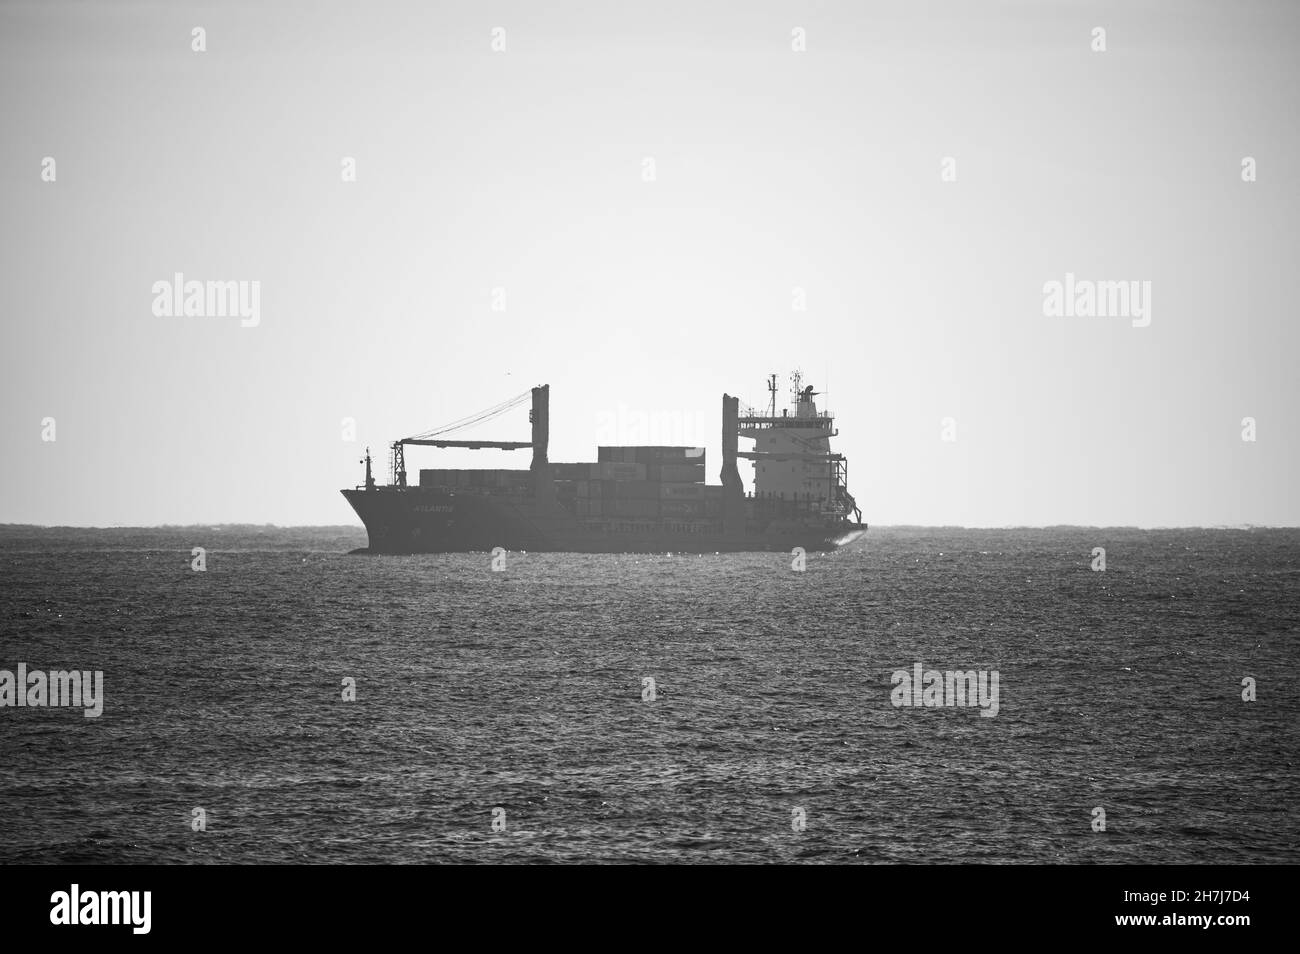 BARCELLONA, SPAGNA - 25 ottobre 2021: Una scala di grigi di una nave da carico all'orizzonte, Barcellona, Spagna Foto Stock